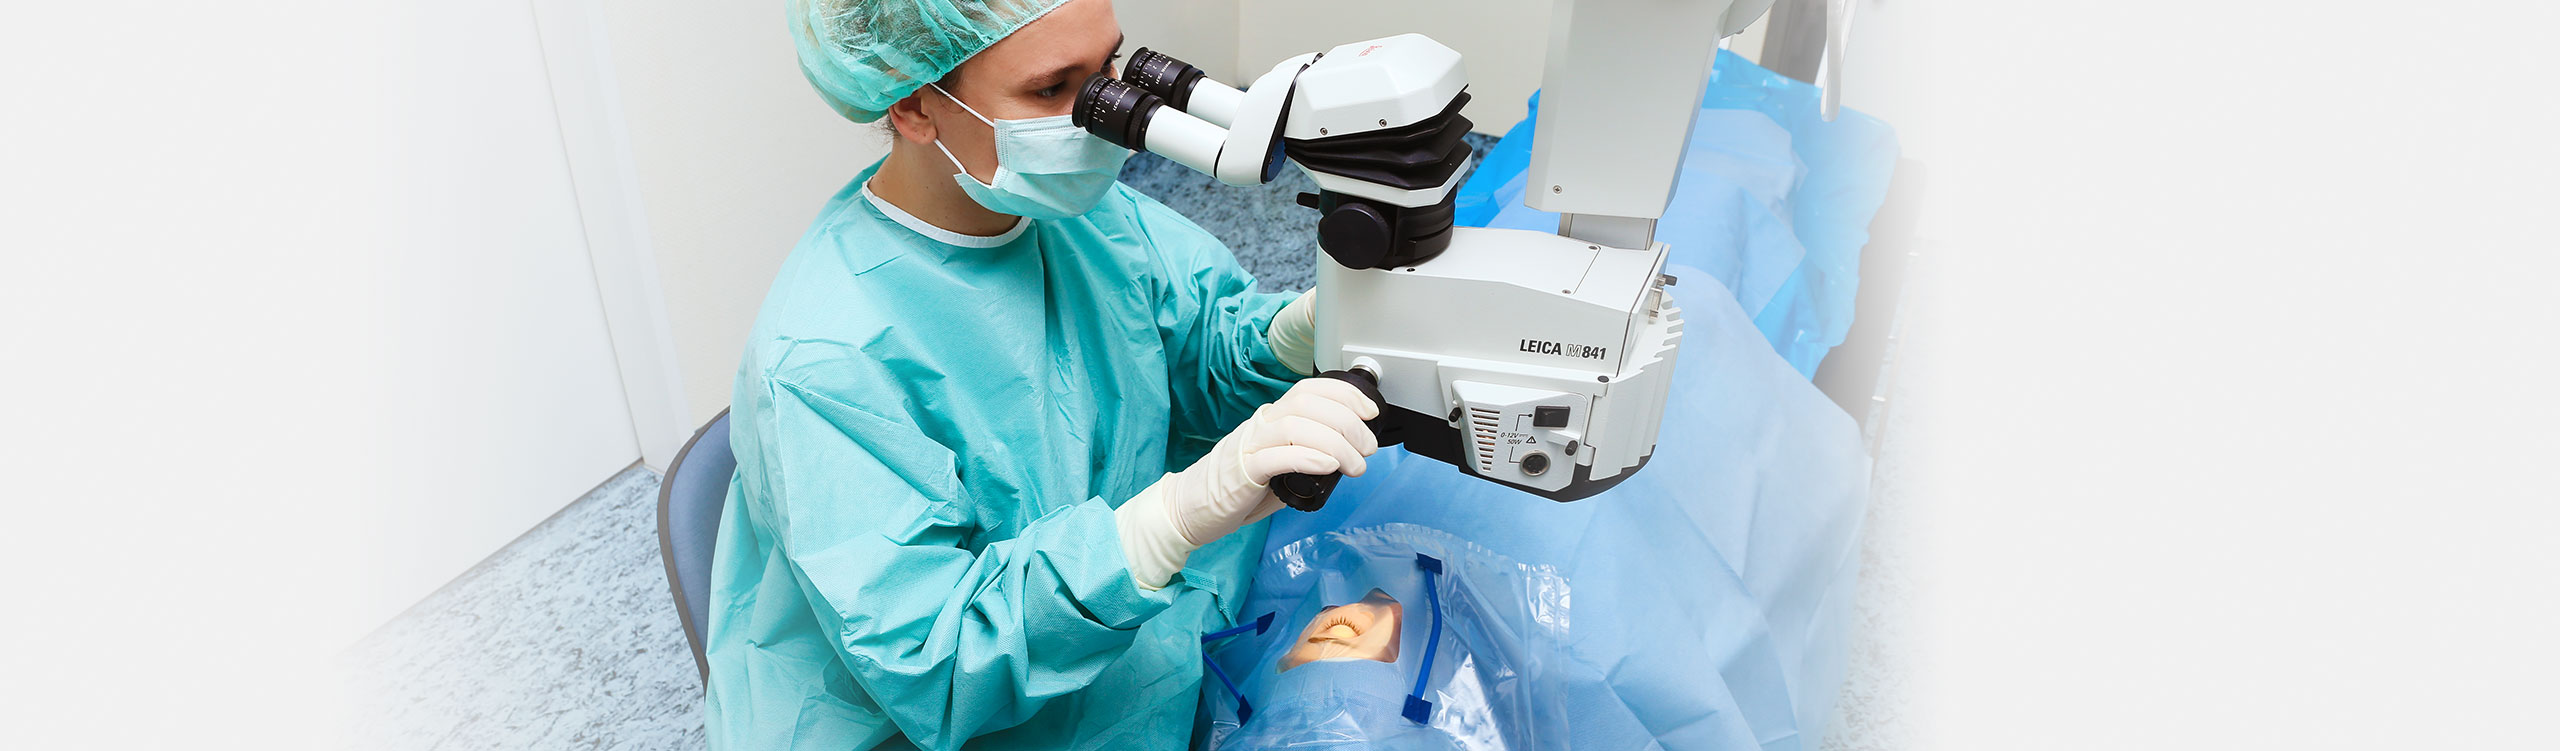 AugenOperationsCentrum Bayreuth: Ärztin bei der Vorbereitung einer anstehenden Augenoperation